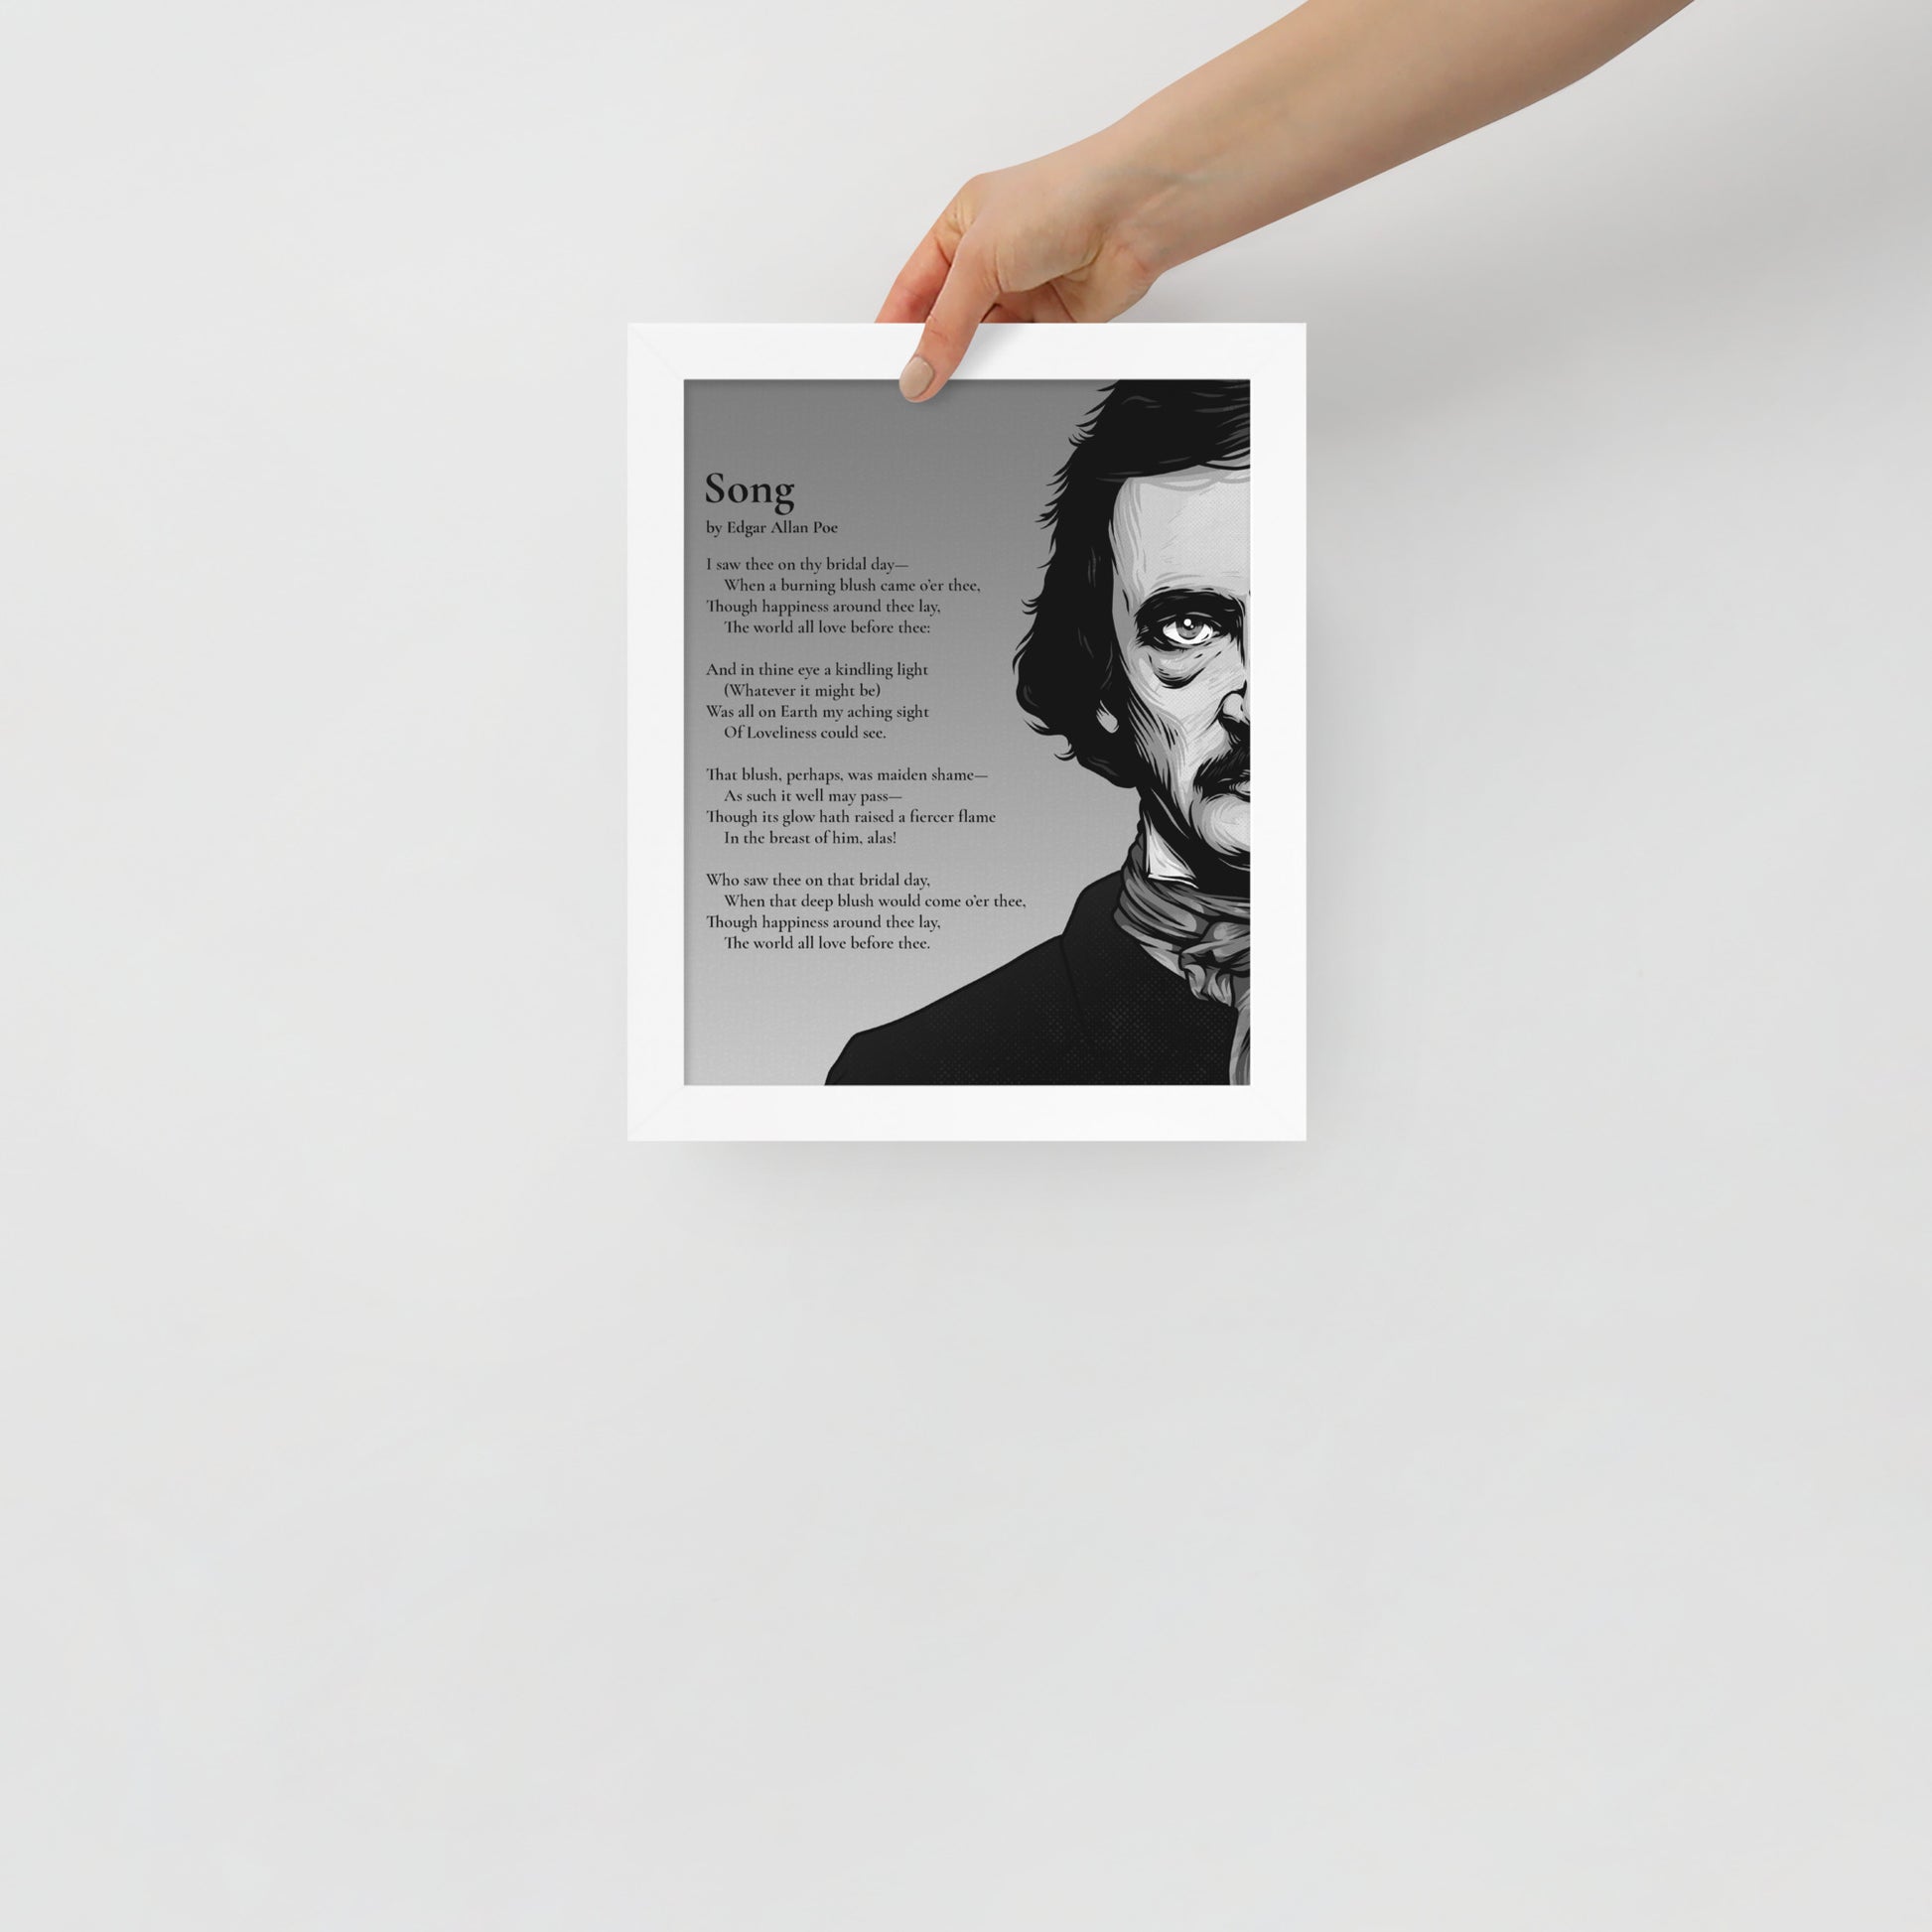 Edgar Allan Poe's 'Song' Framed Matted Poster - 8 x 10 White Frame